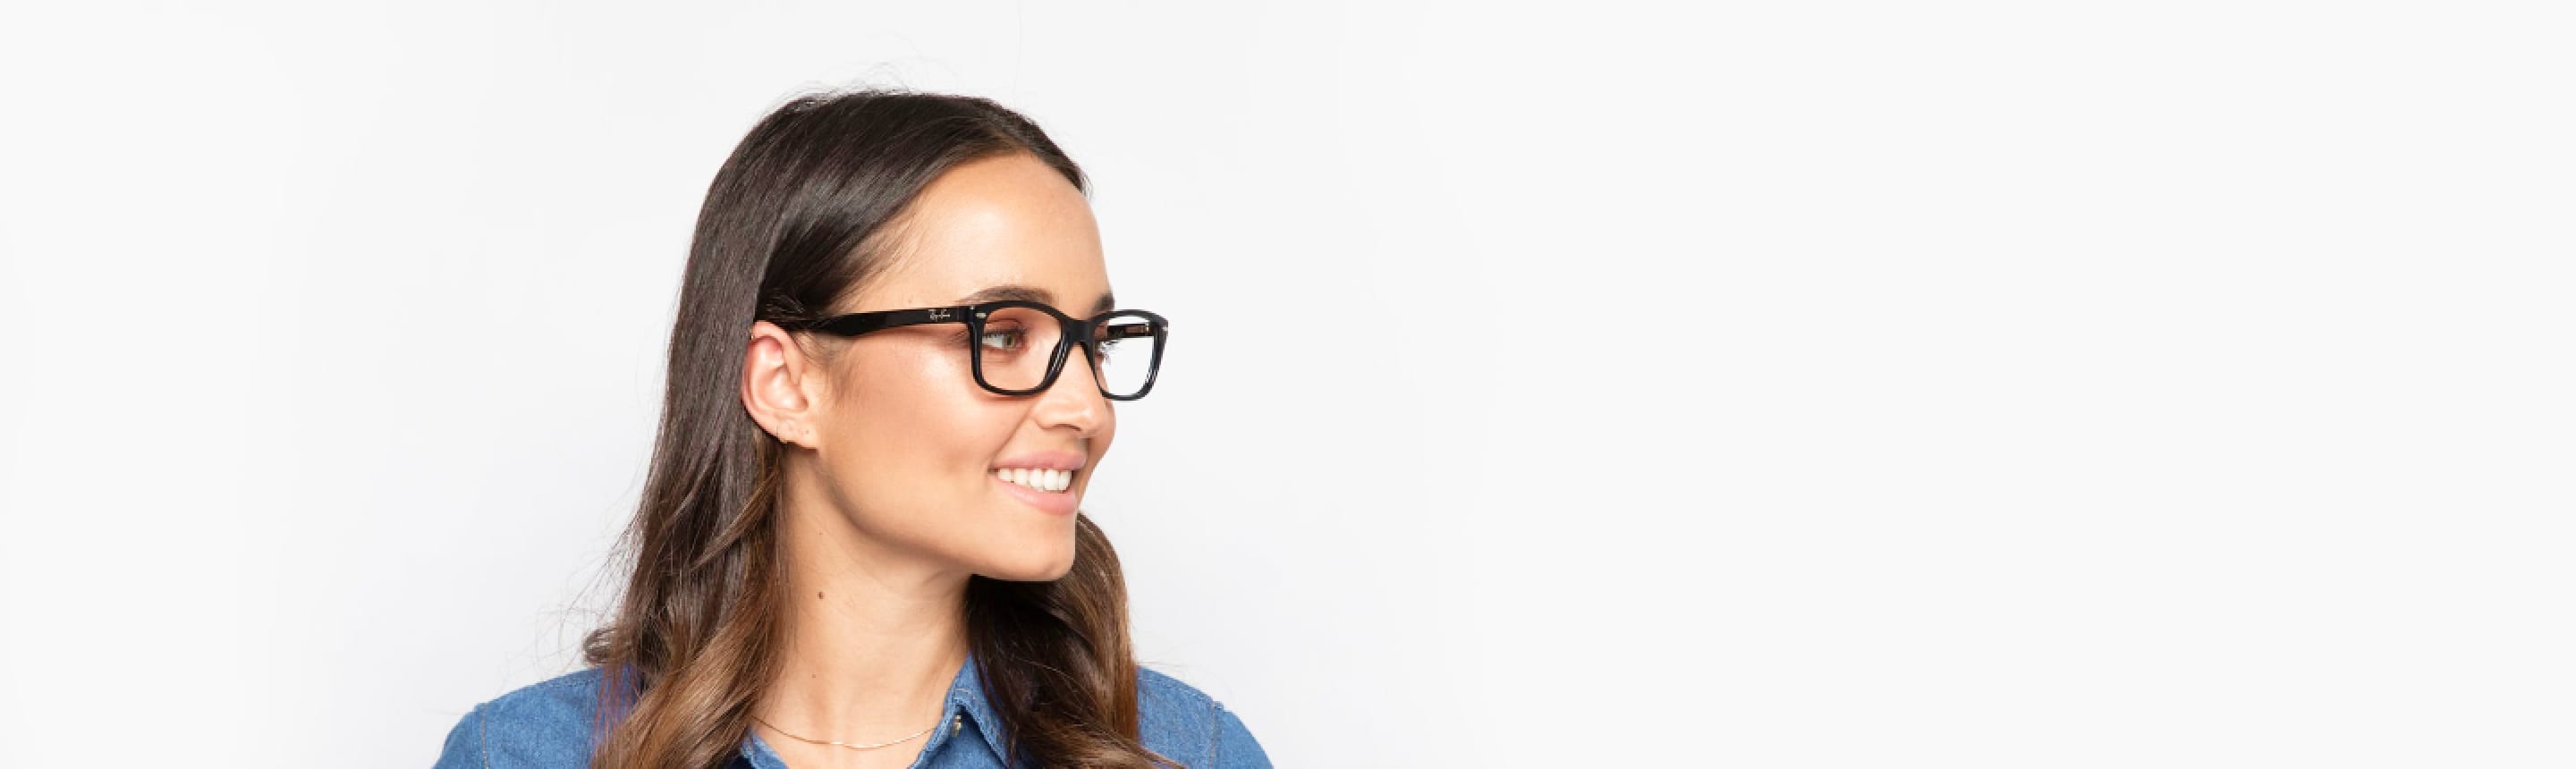 Virtual Try On Glasses, Sunglasses & Eyeglasses Online